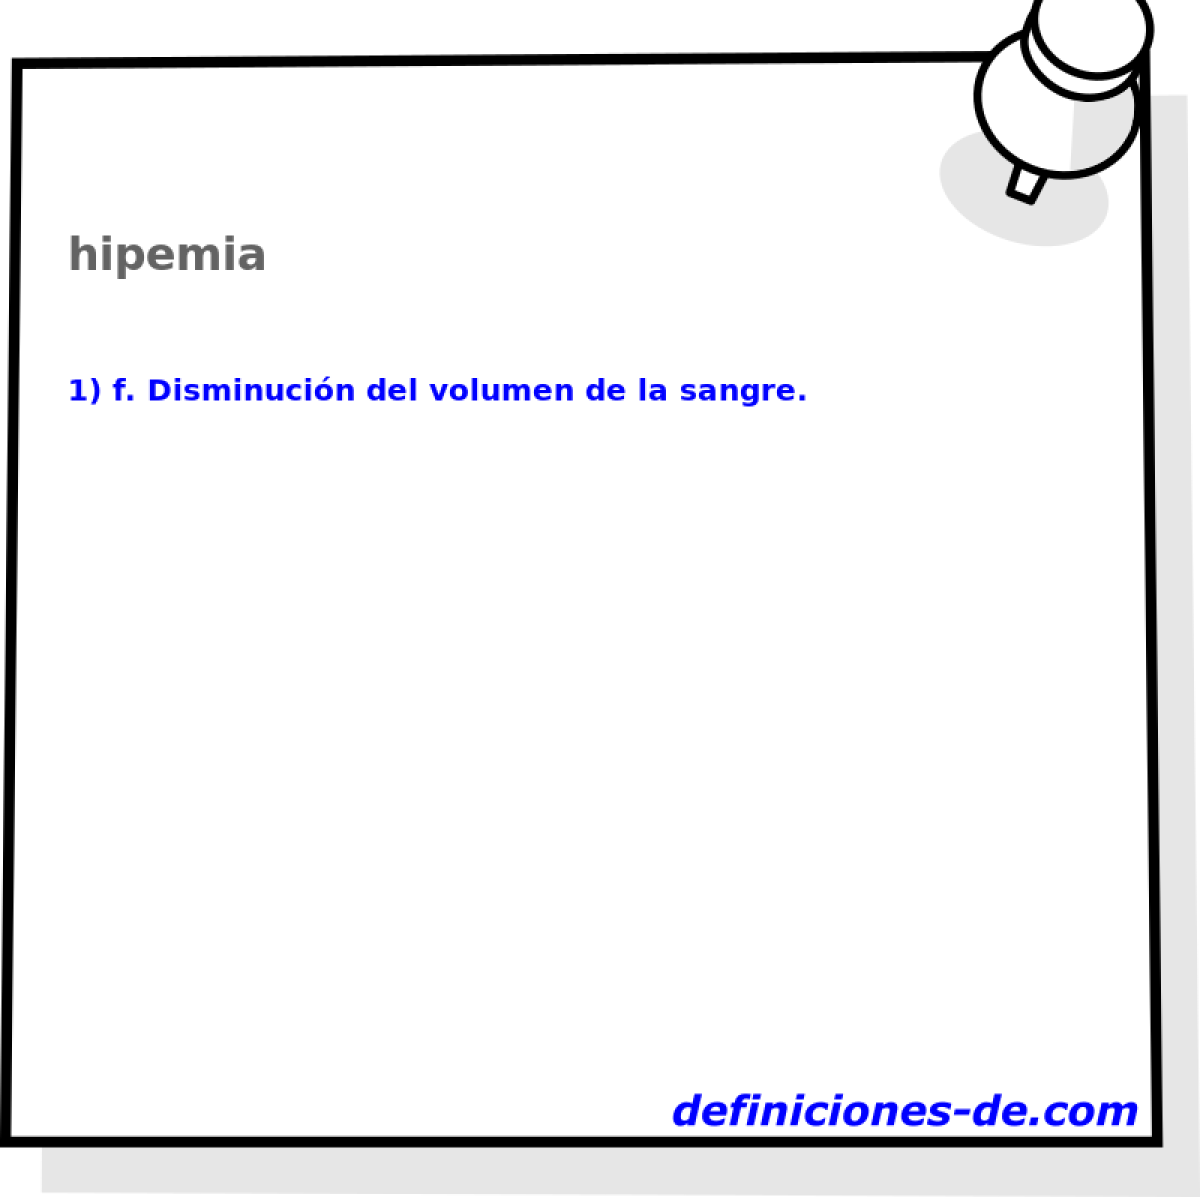 hipemia 